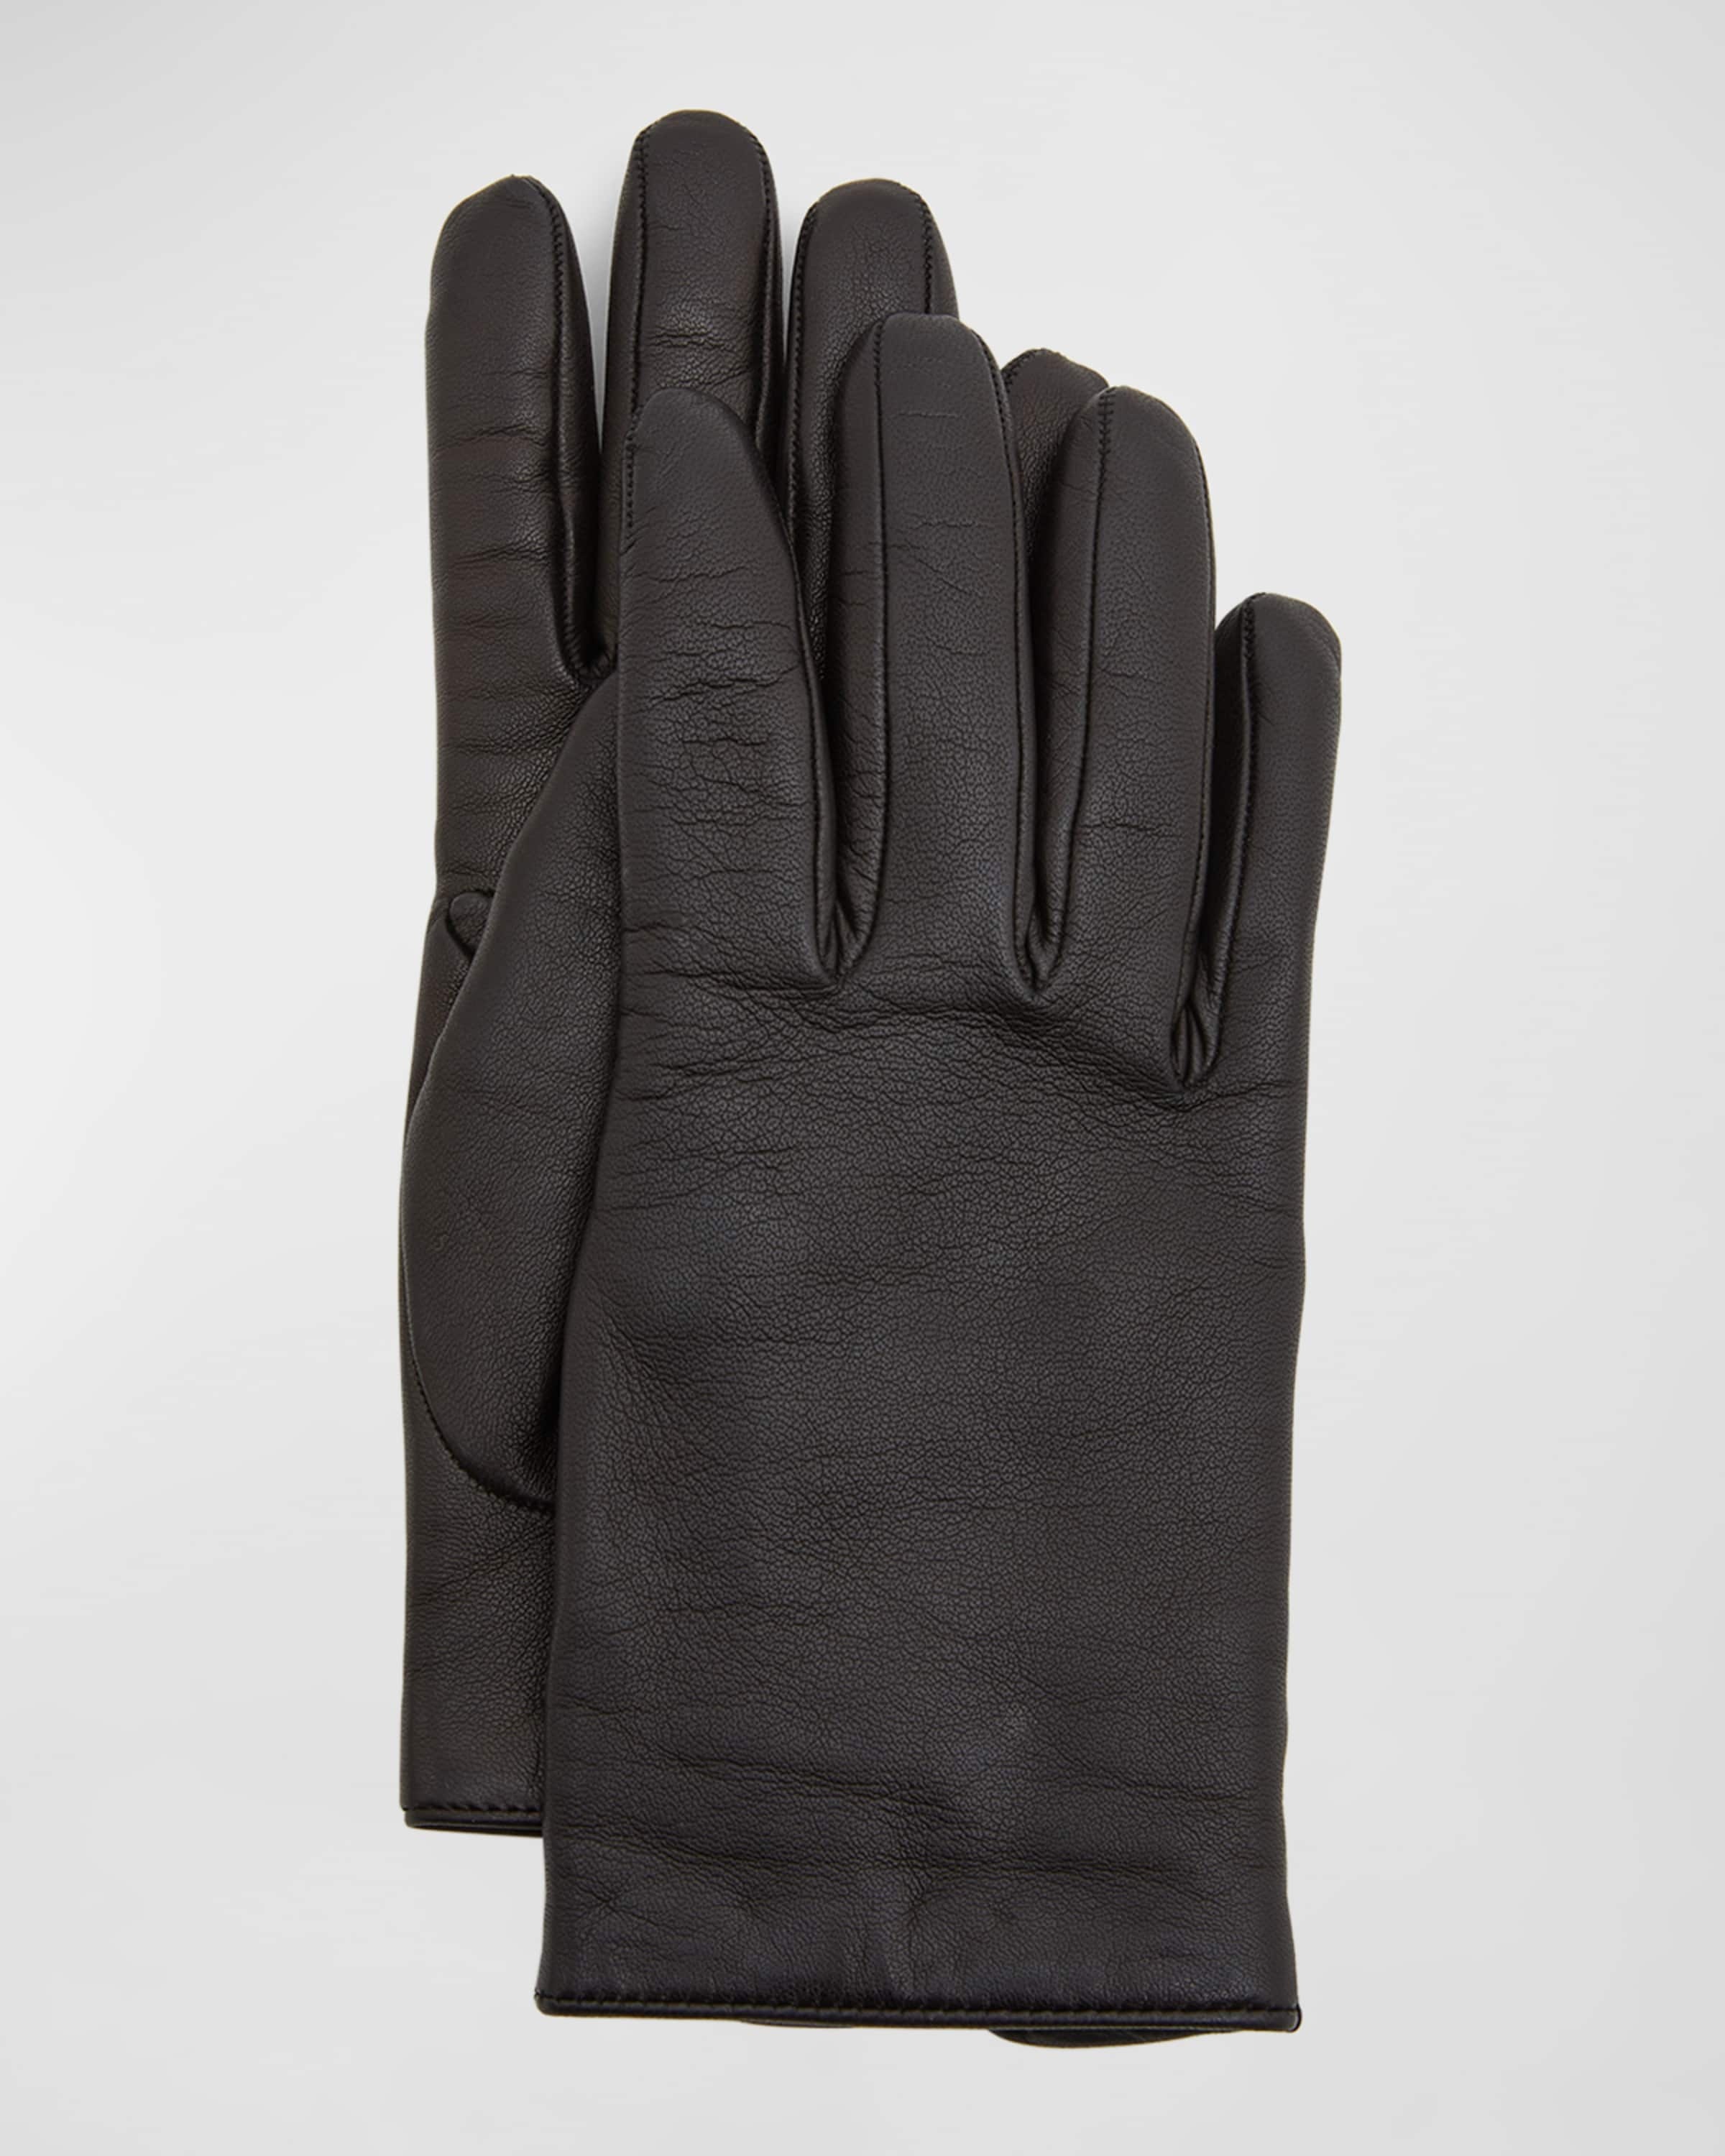 YSL Vintage-Style Slit Gloves - 1